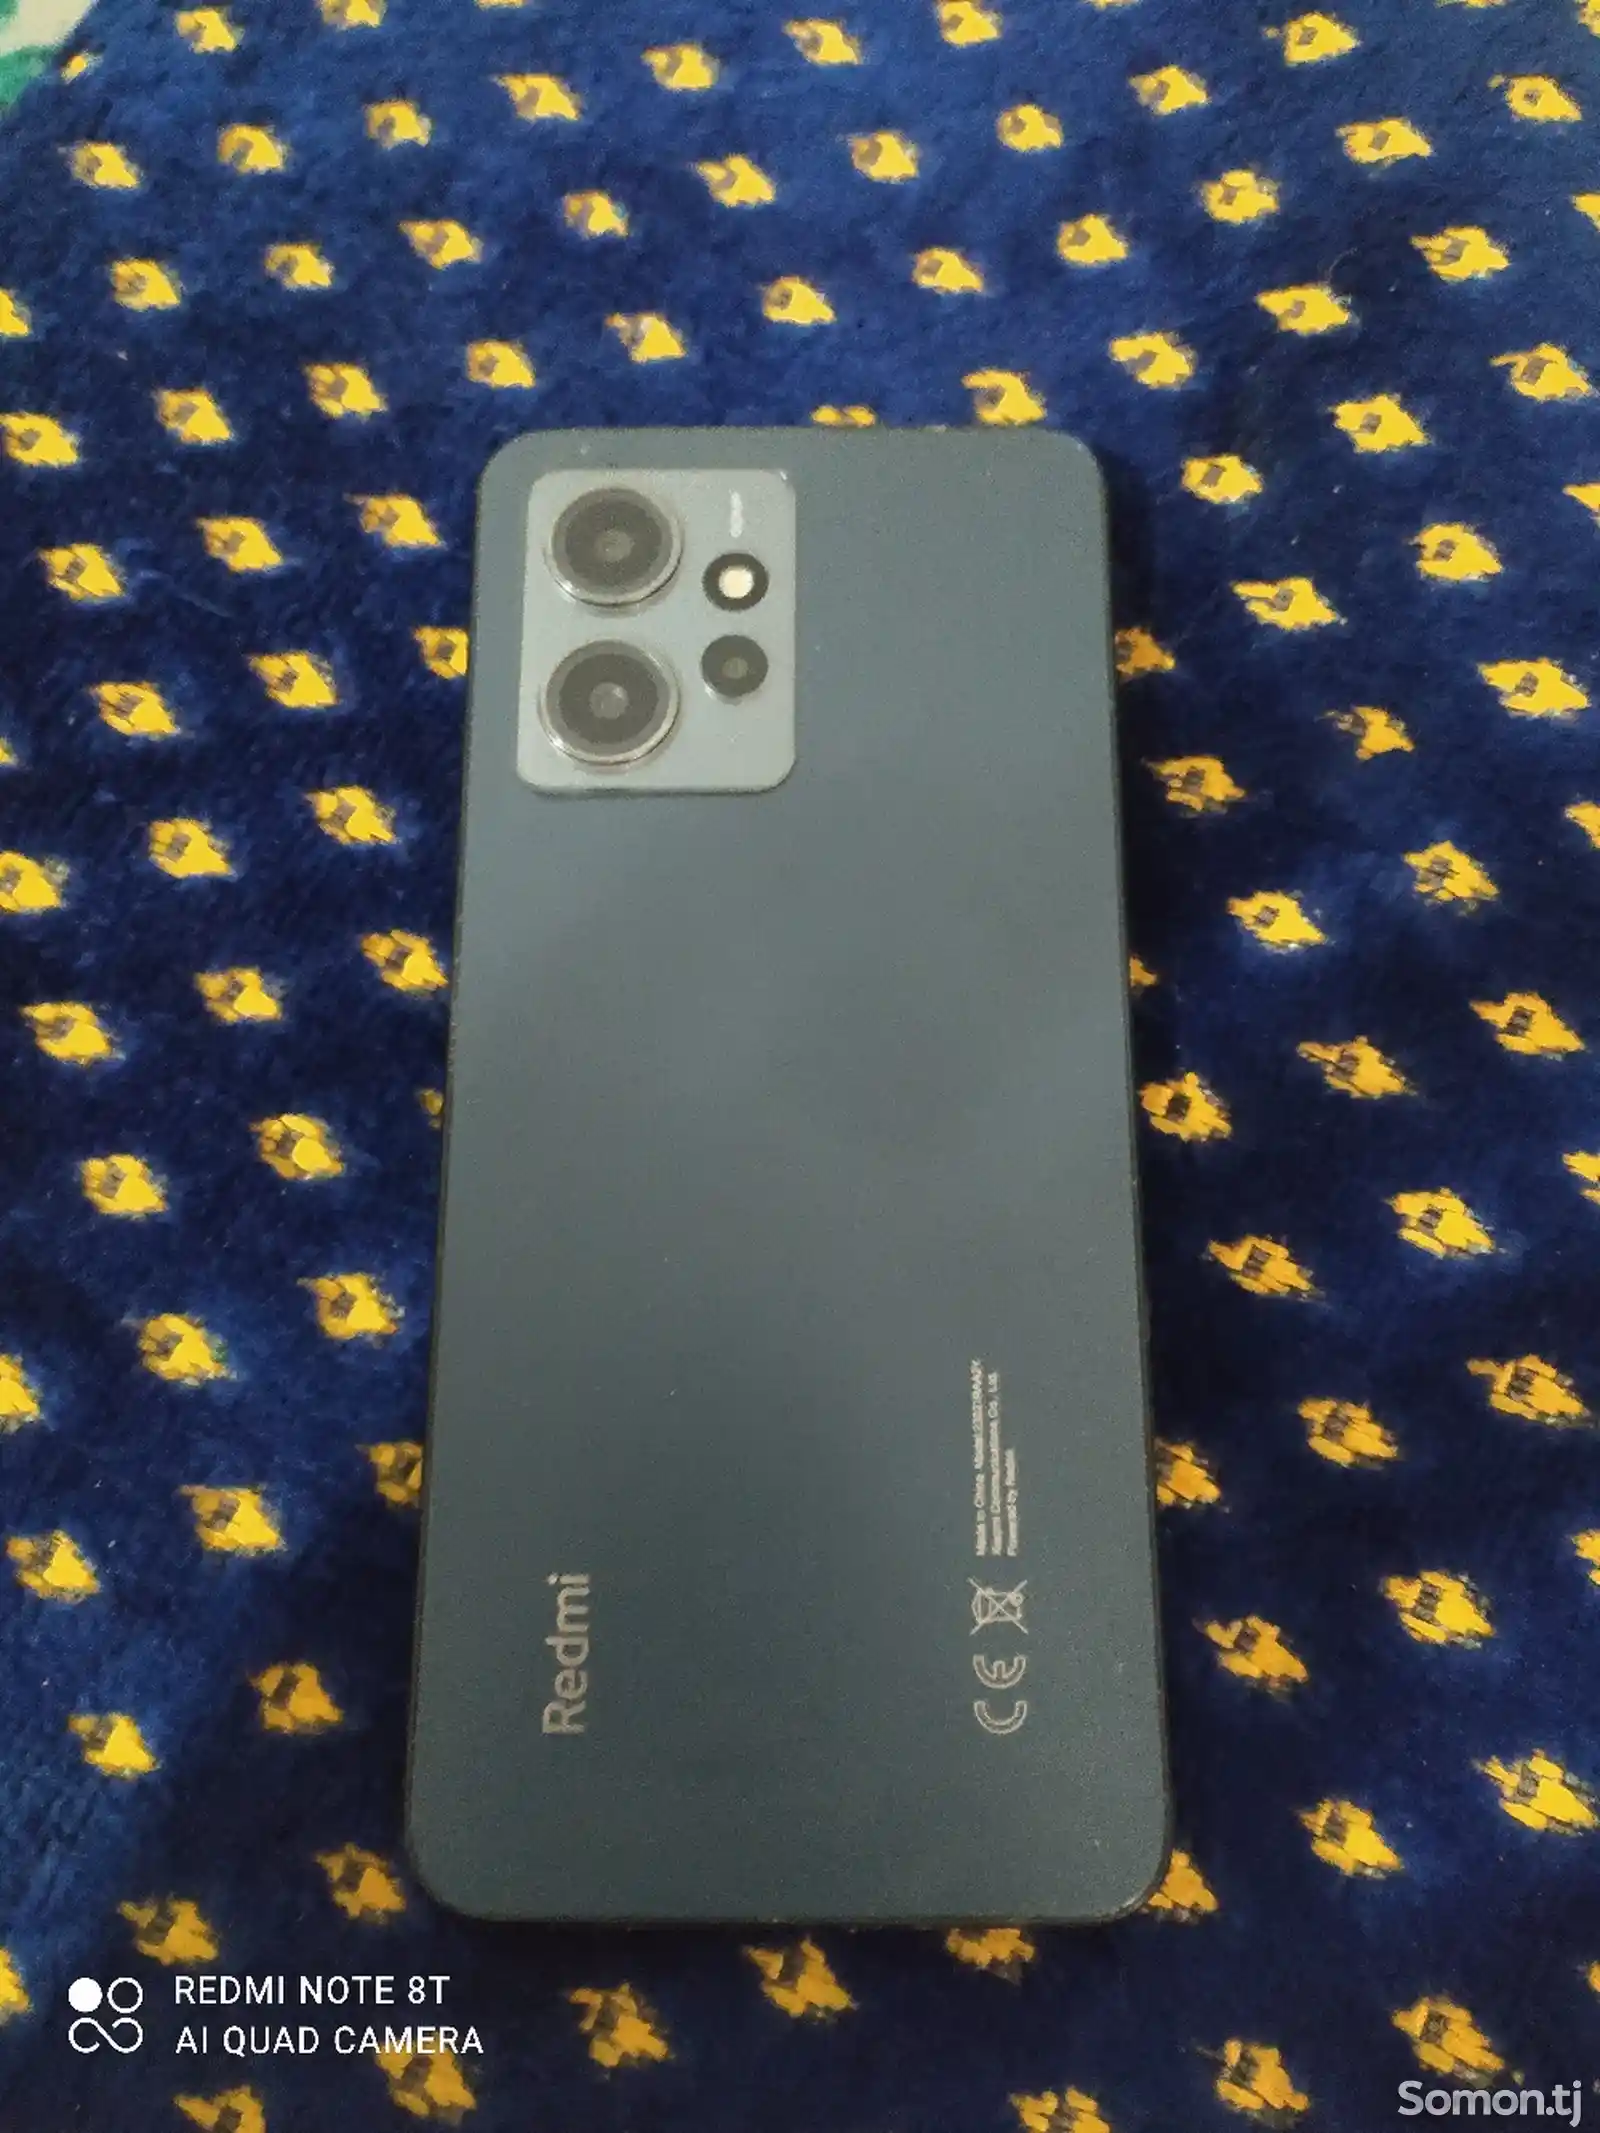 Xiaomi Redmi Note 12-1